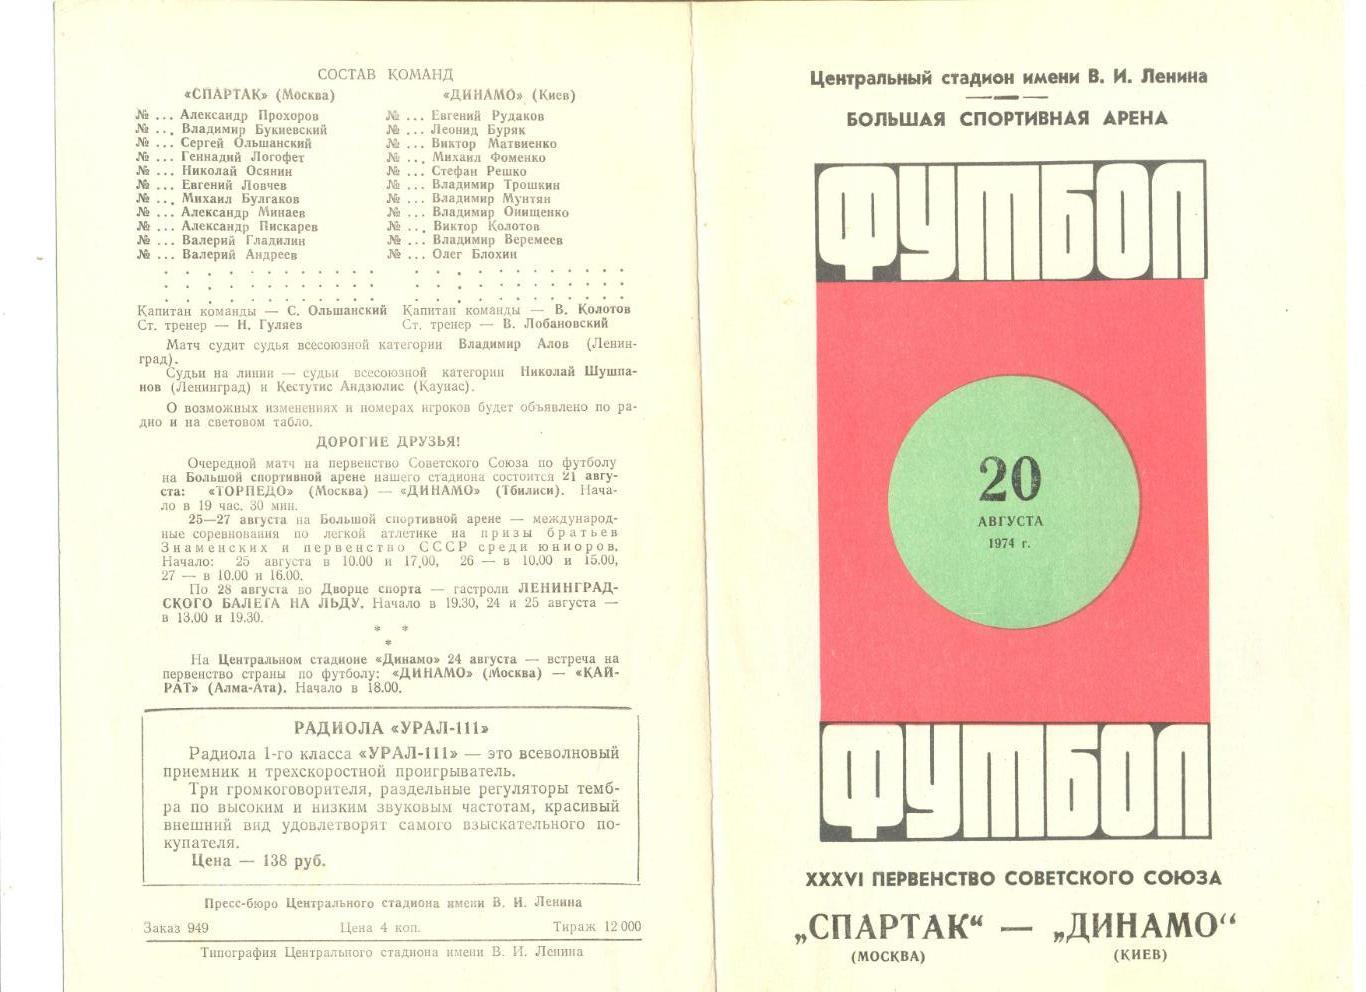 Спартак Москва - Динамо Киев 20.08.1974 г.